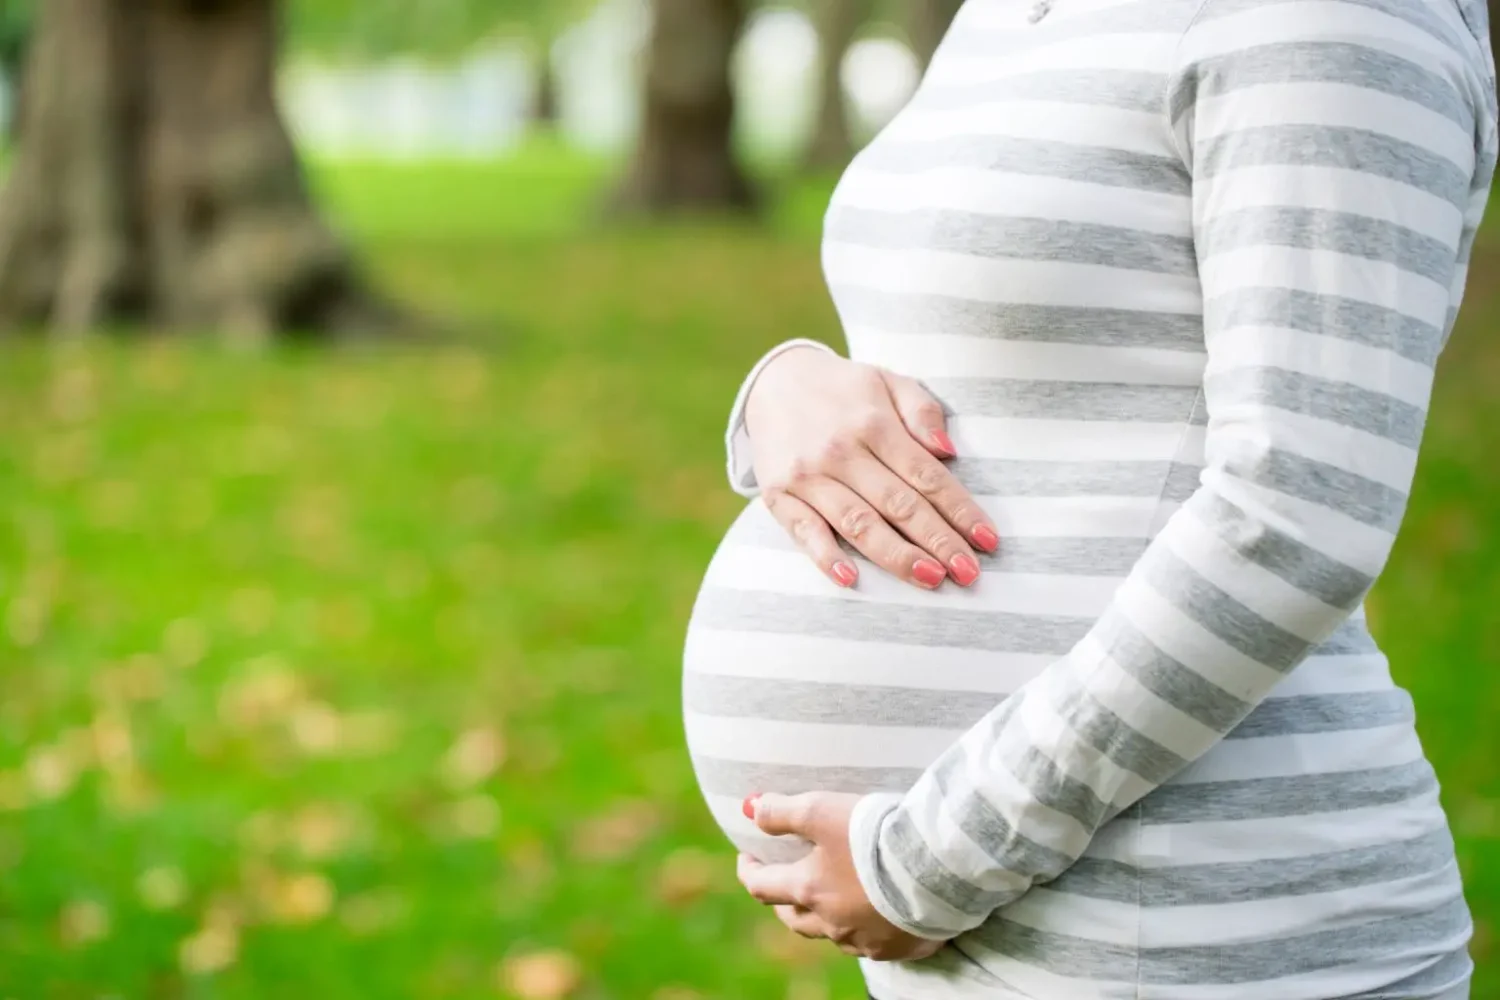 تفسير حلم الحمل على وشك الولادة للعزباء لابن سيرين والنابلسي